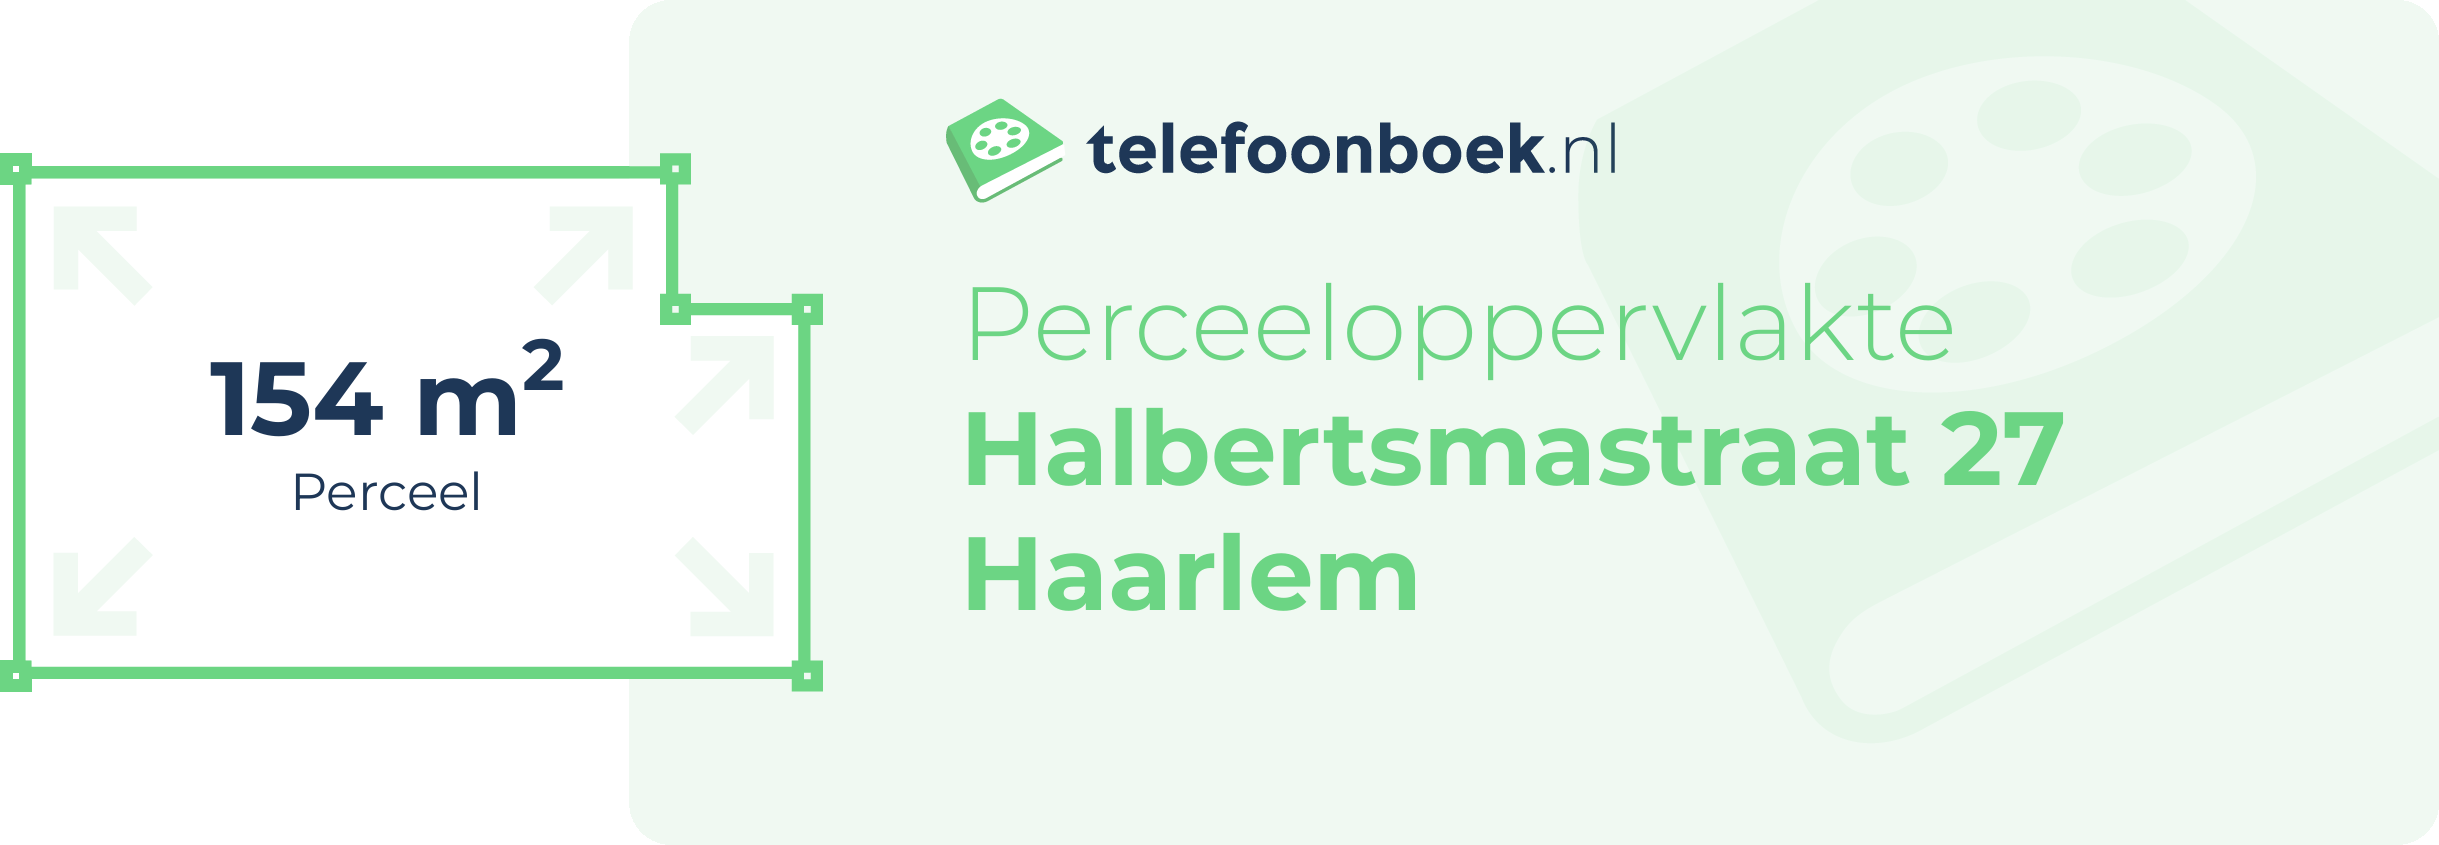 Perceeloppervlakte Halbertsmastraat 27 Haarlem